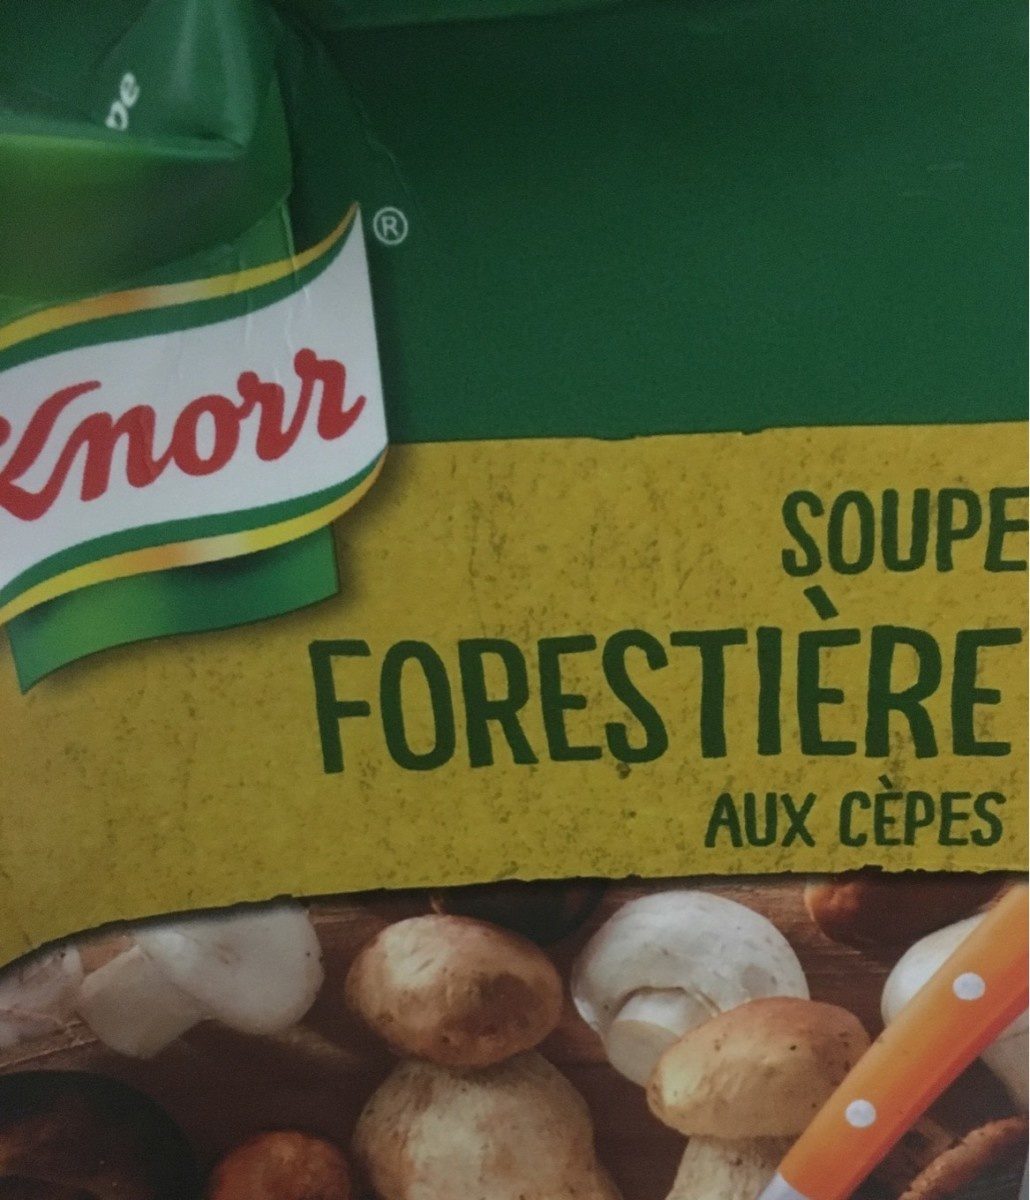 Soupe forestiere aux cepes - Produkt - fr